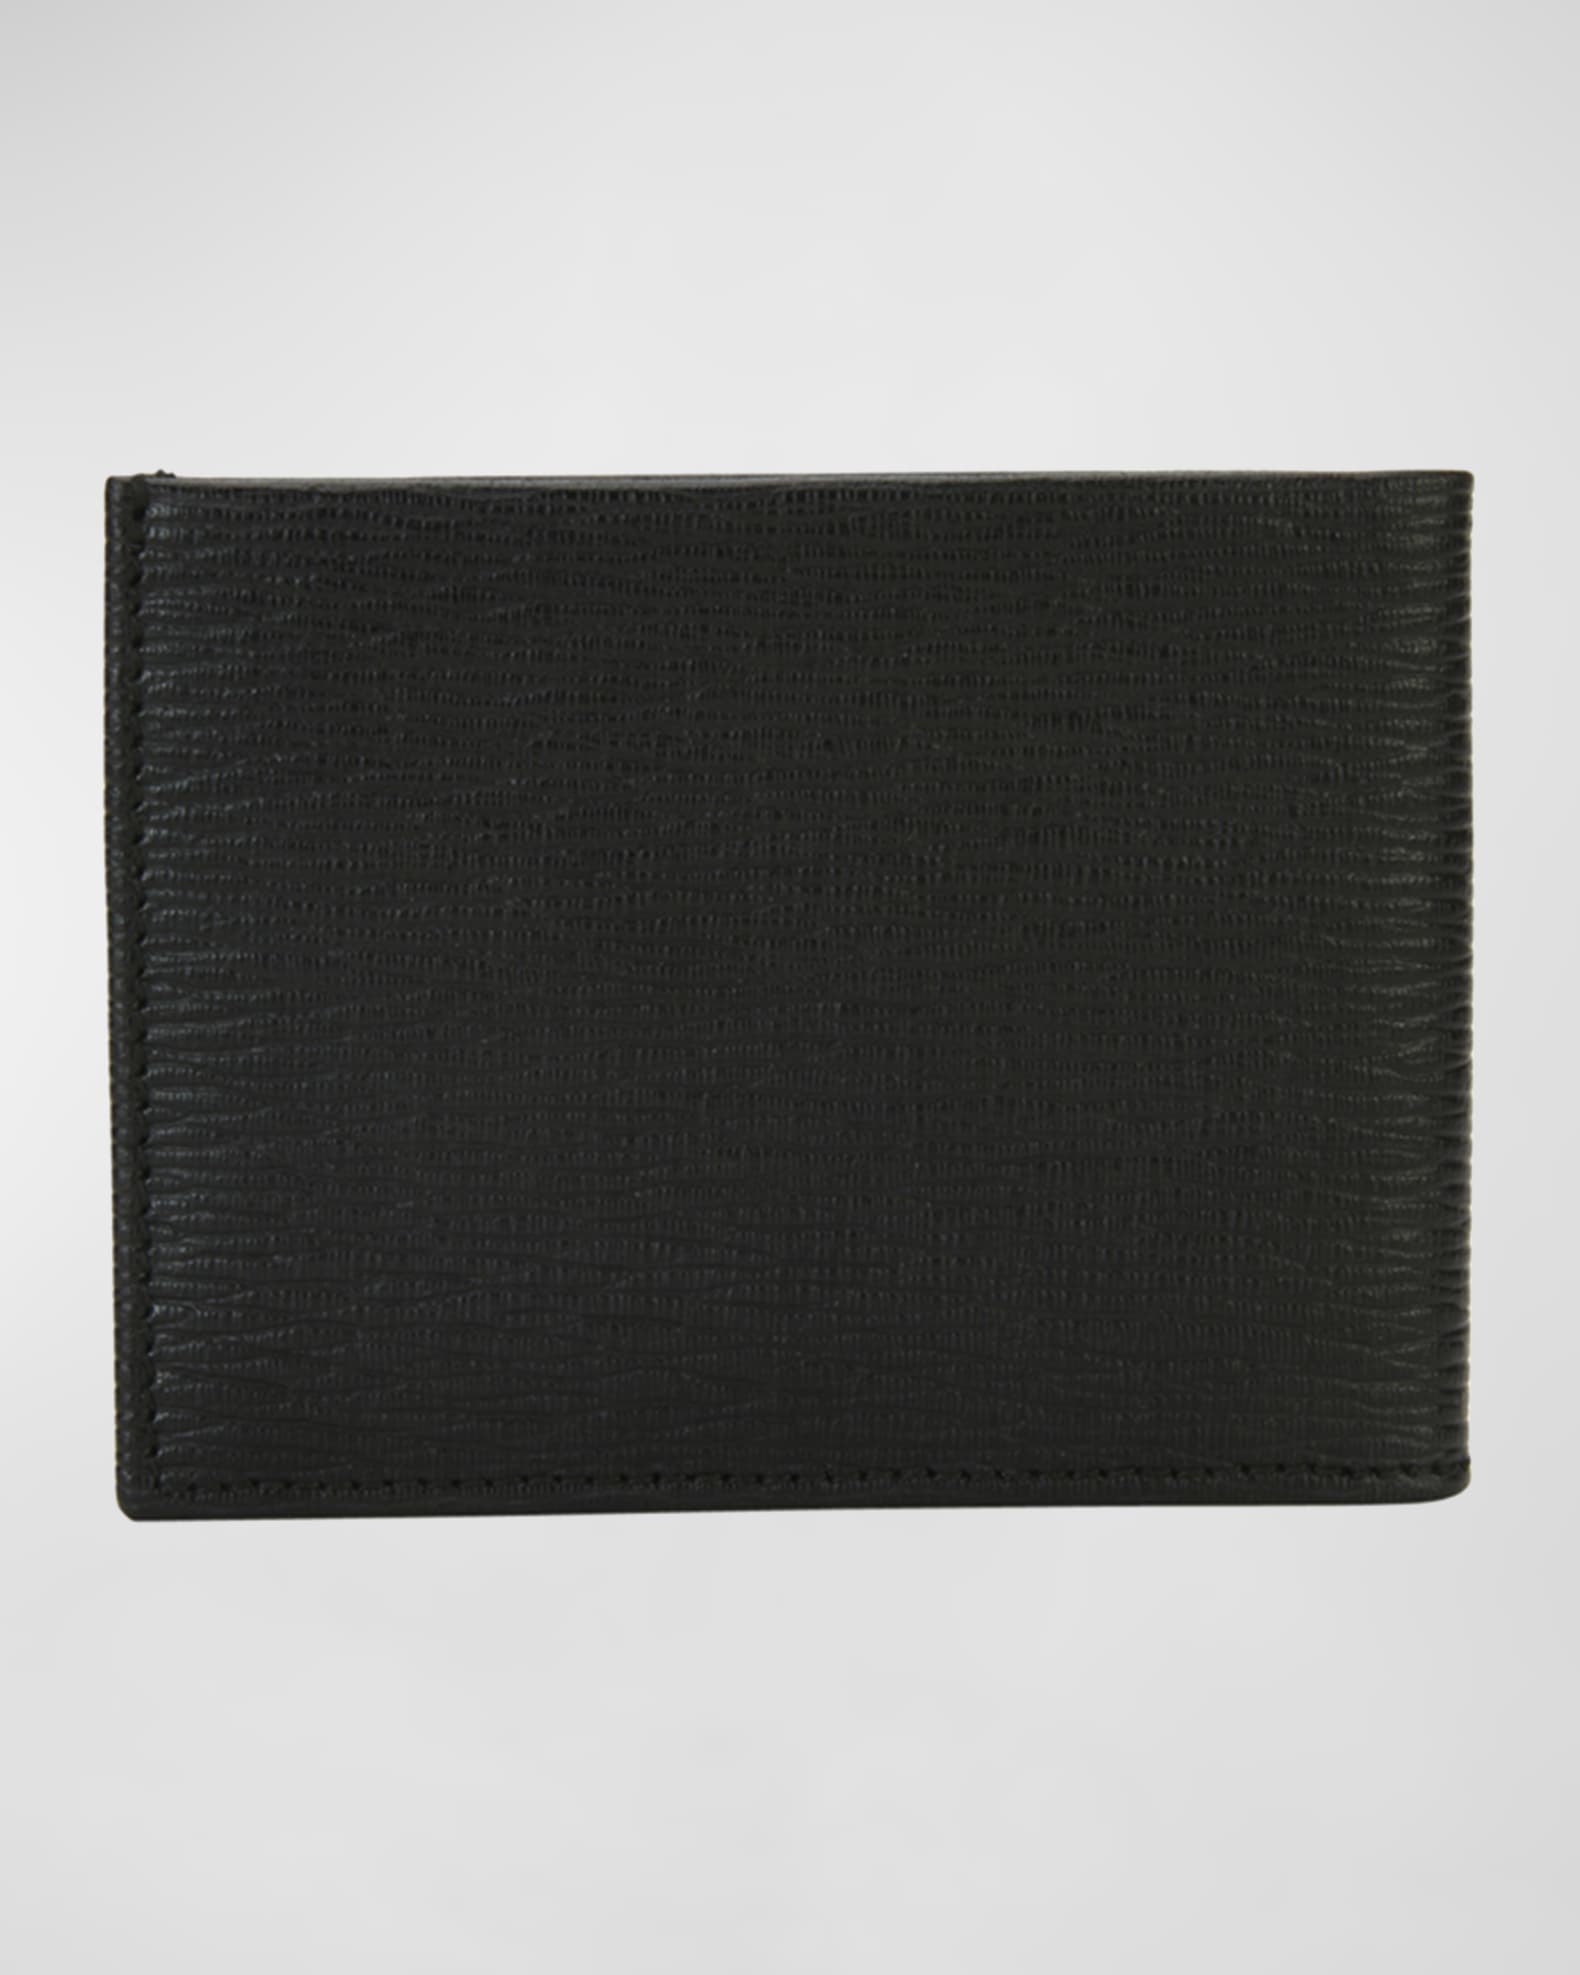 SALVATORE FERRAGAMO #31277 Black Saffiano Leather Gancini Wallet